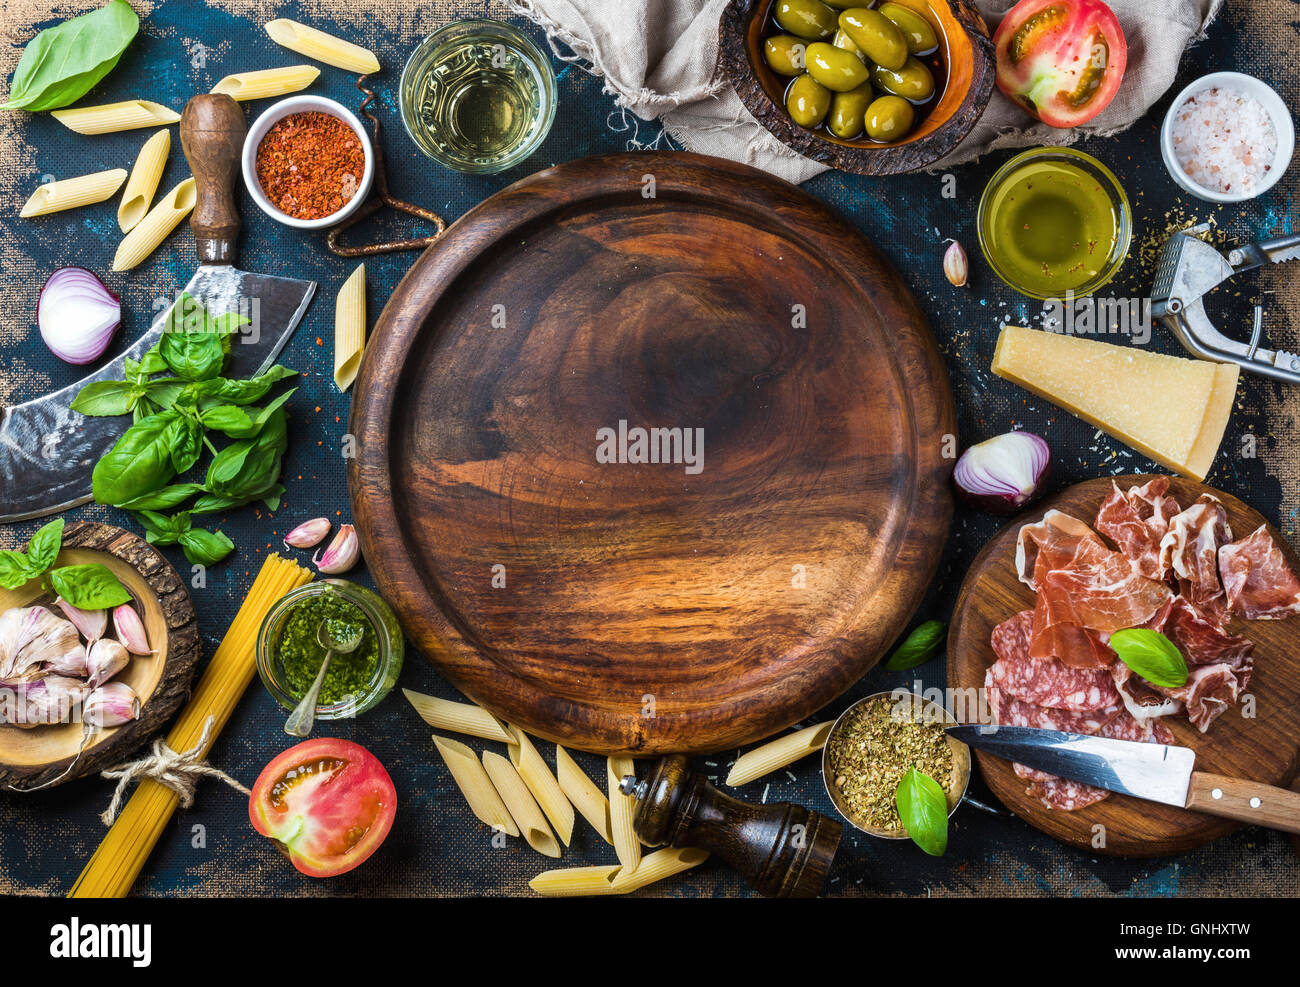 Italienische Küche kochen Zutaten auf dunklen Sperrholz Hintergrund mit runden Tablett aus Holz in der Mitte, Draufsicht, Textfreiraum, horizontale c Stockfoto